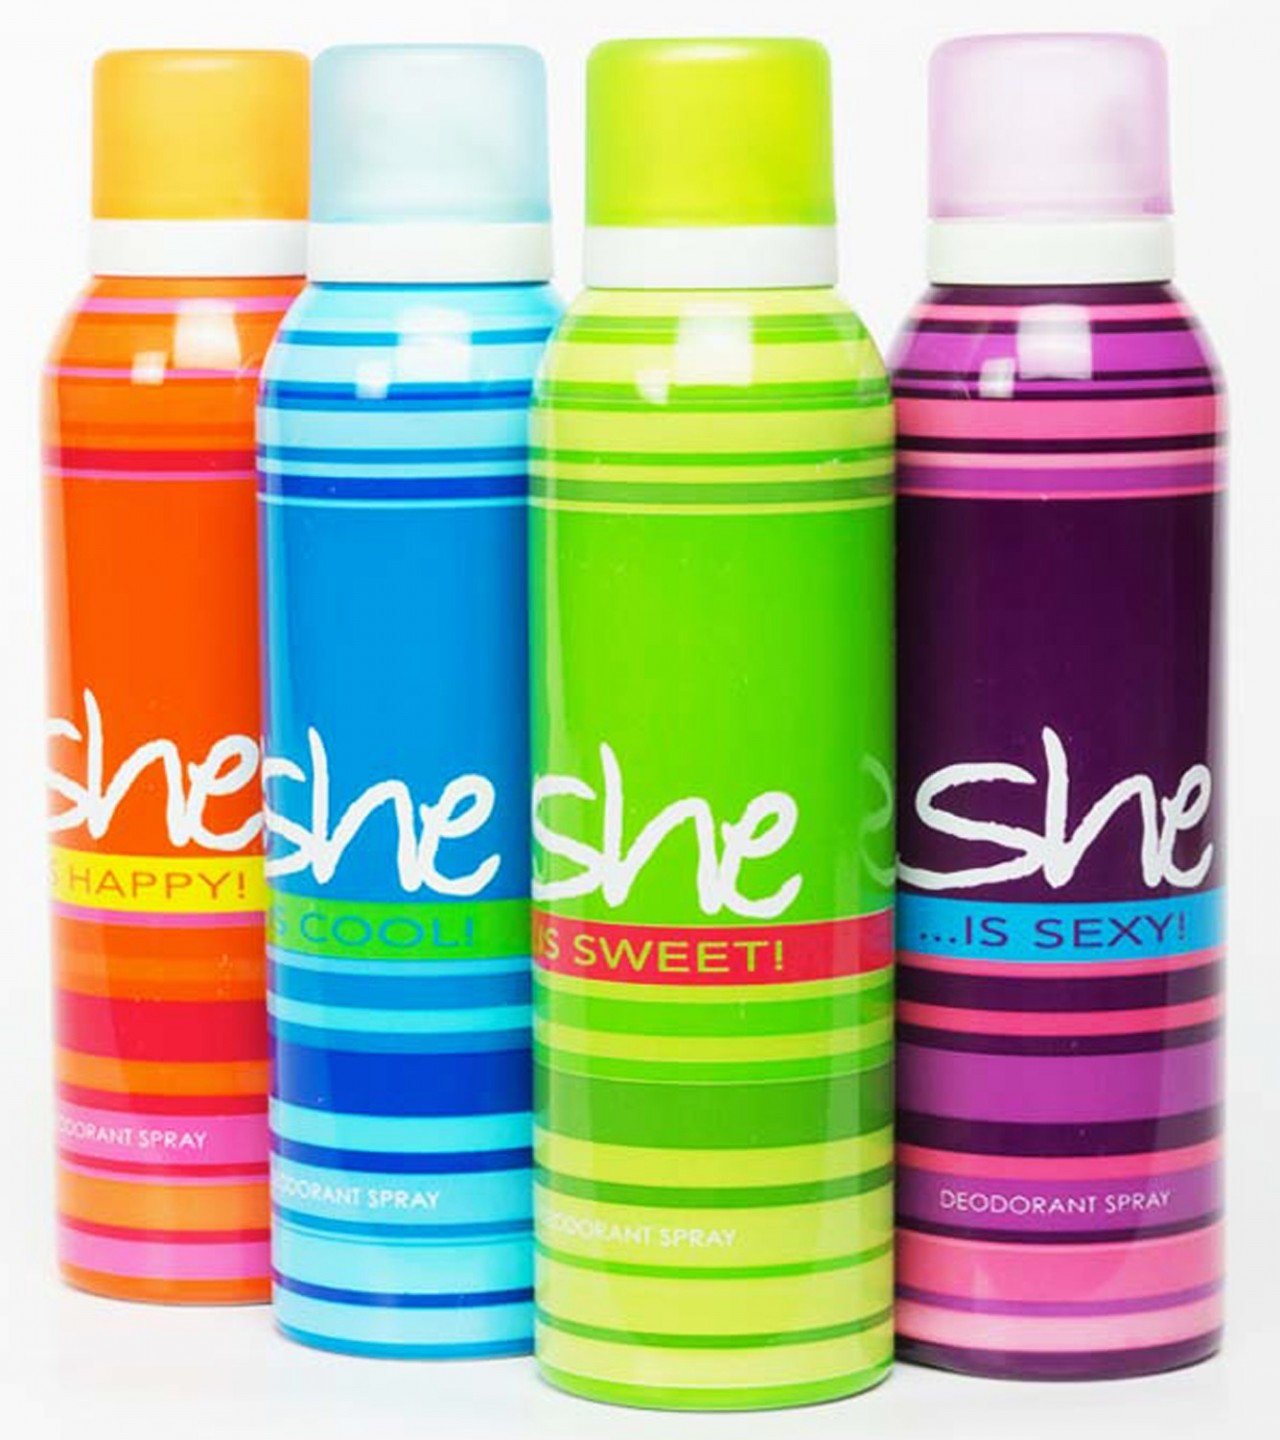 Pack of 3 - She Body Spray Deodorant For Women - 200 ml